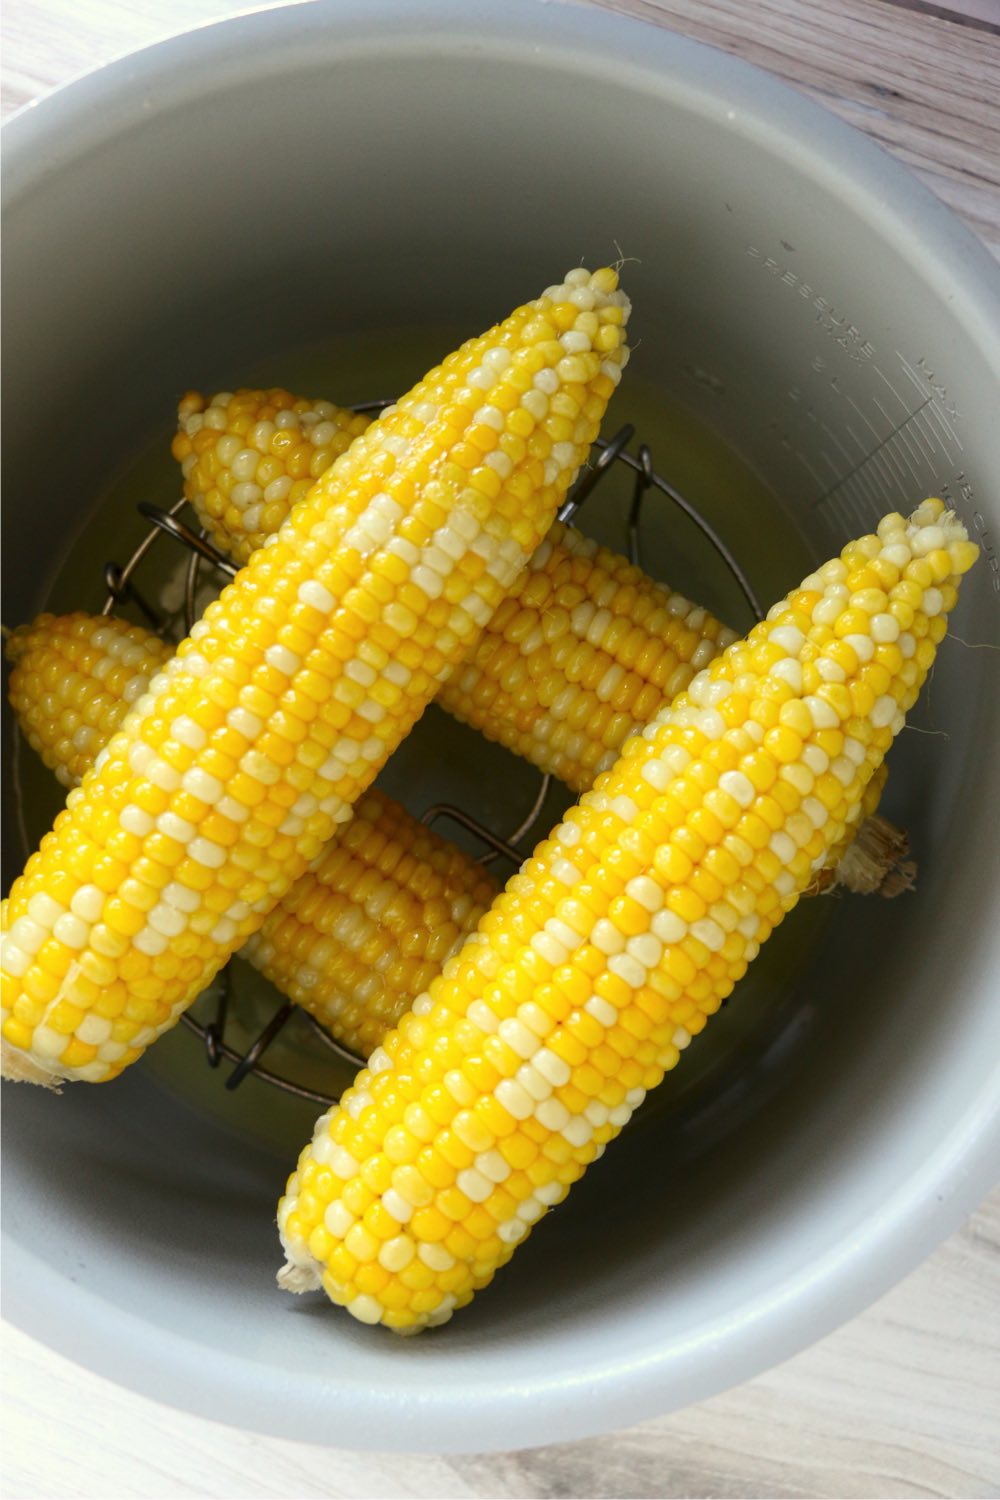 corn on the cob in the Ninja Foodi cooking pot